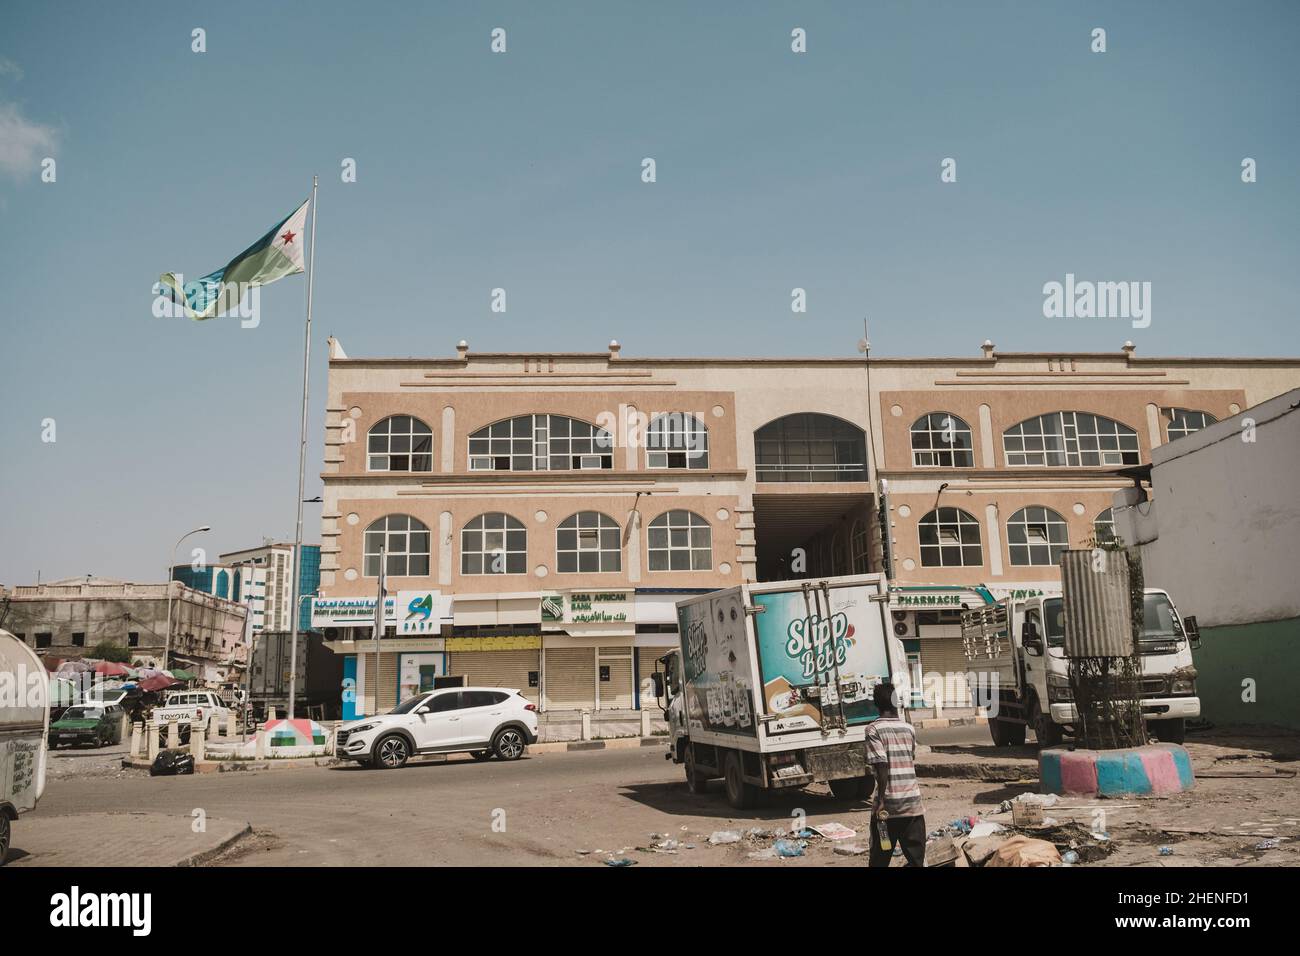 Djibouti, Djibouti - May 21, 2021: Djibouti flag and a building in Djibouti. A street in Djibouti. Editorial shot in Djibouti. Stock Photo